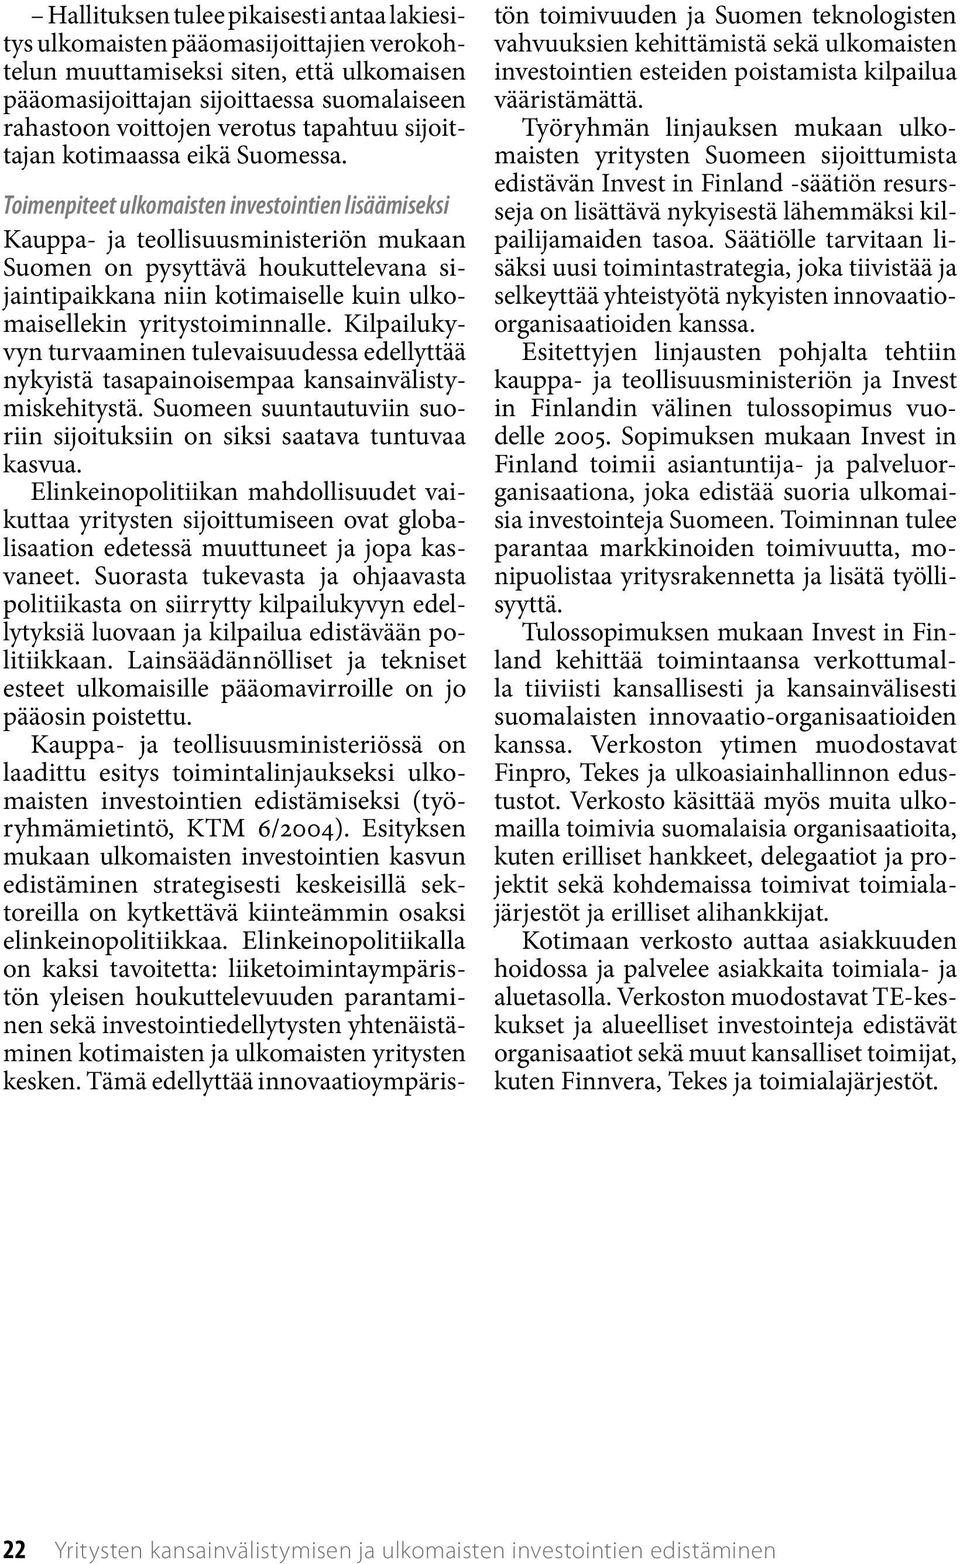 Toimenpiteet ulkomaisten investointien lisäämiseksi Kauppa- ja teollisuusministeriön mukaan Suomen on pysyttävä houkuttelevana sijaintipaikkana niin kotimaiselle kuin ulkomaisellekin